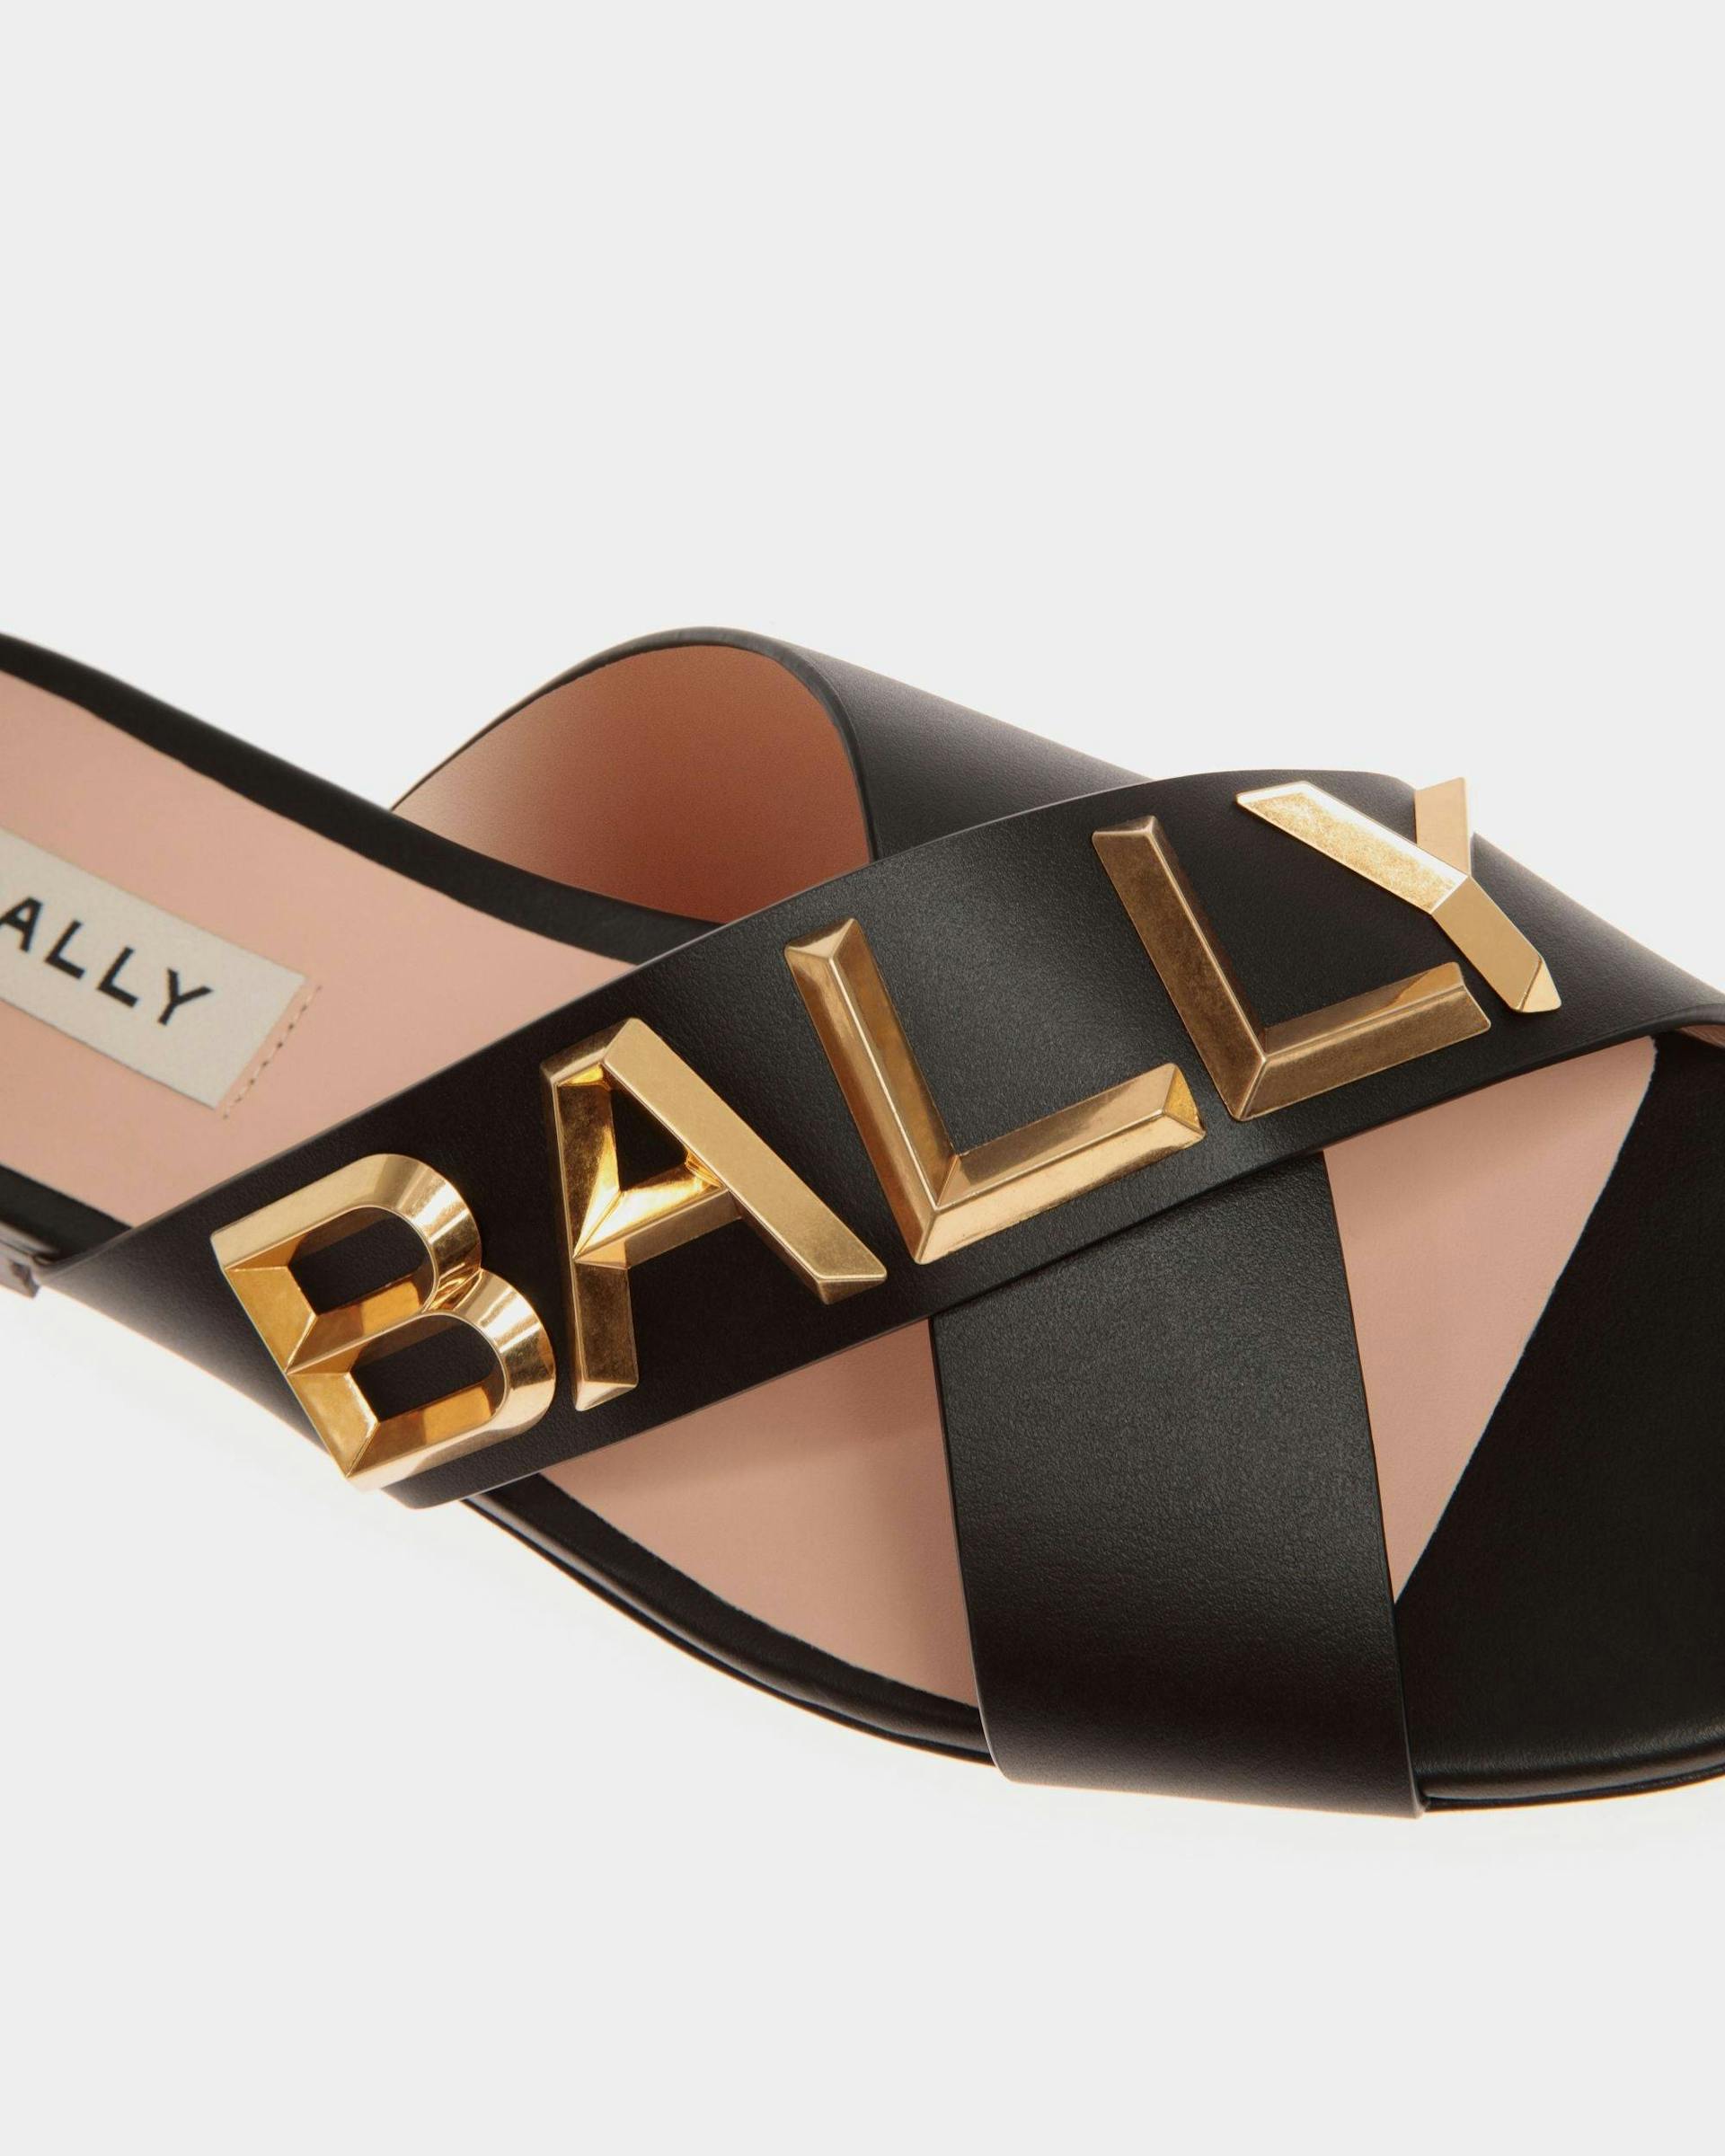 Women's Bally Spell Flat Slide in Leather | Bally | Still Life Detail